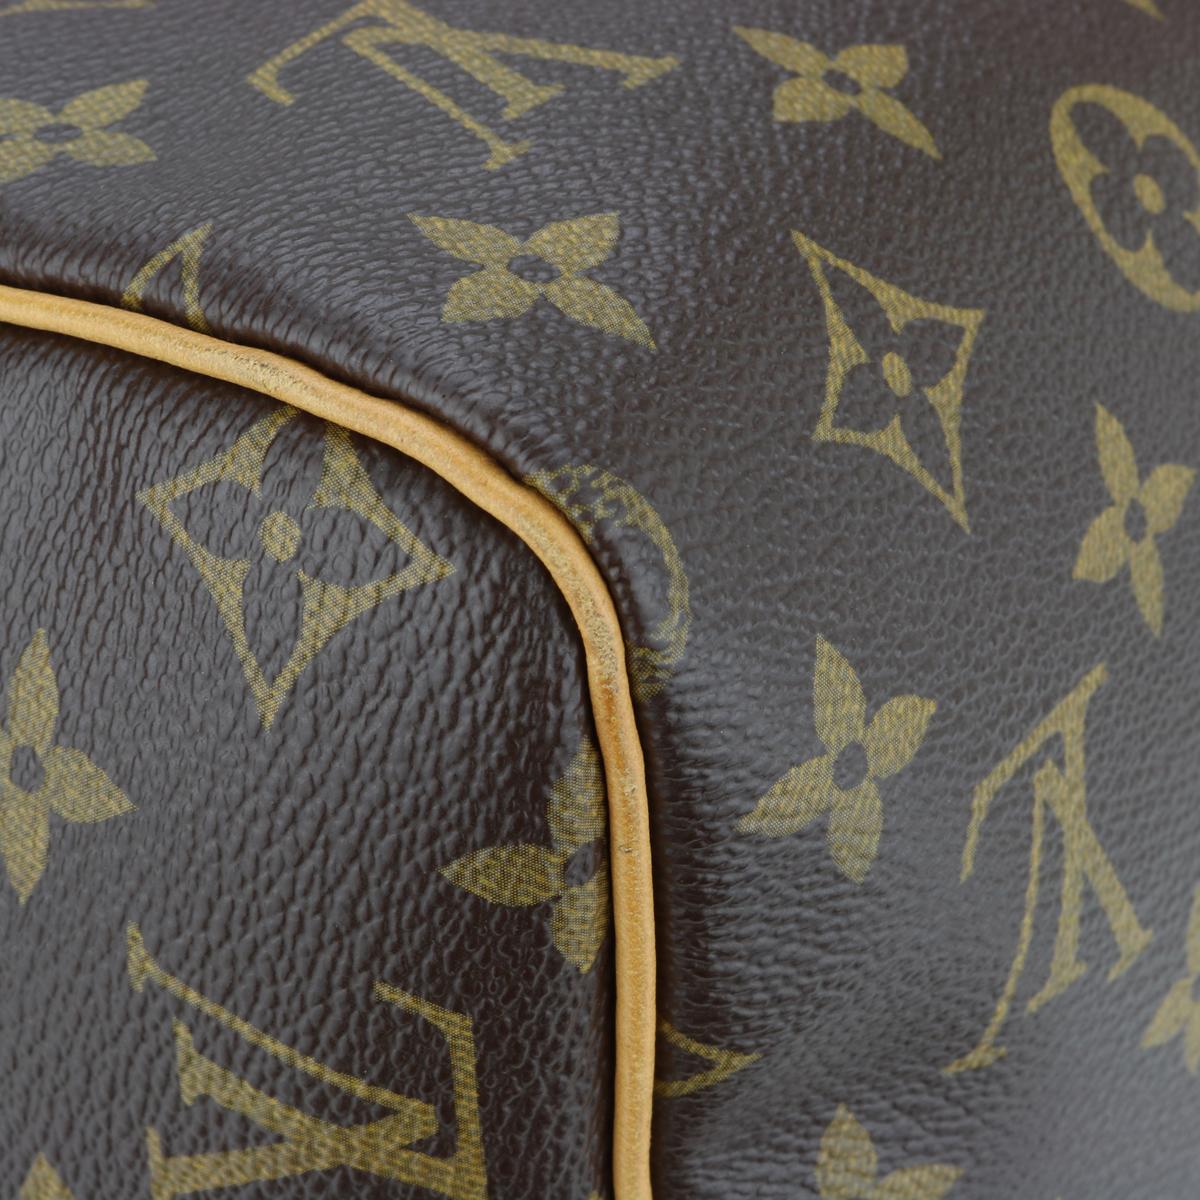 Louis Vuitton Speedy 30 in Monogram 2015 5